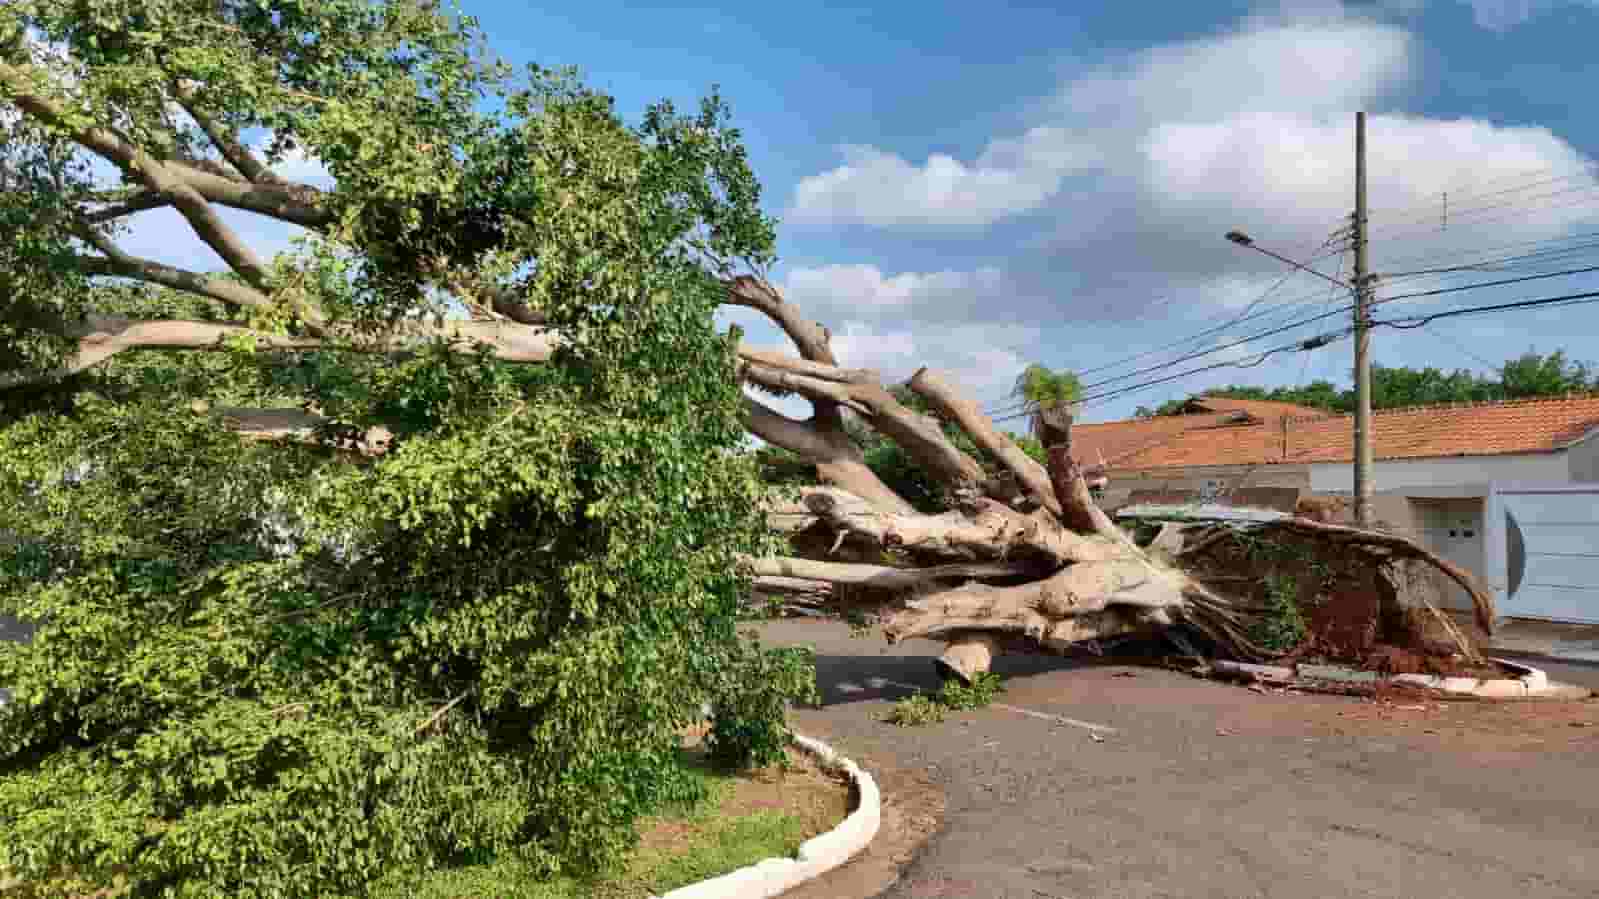 Após temporal, saiba como identificar risco de queda de árvores e solicitar remoção